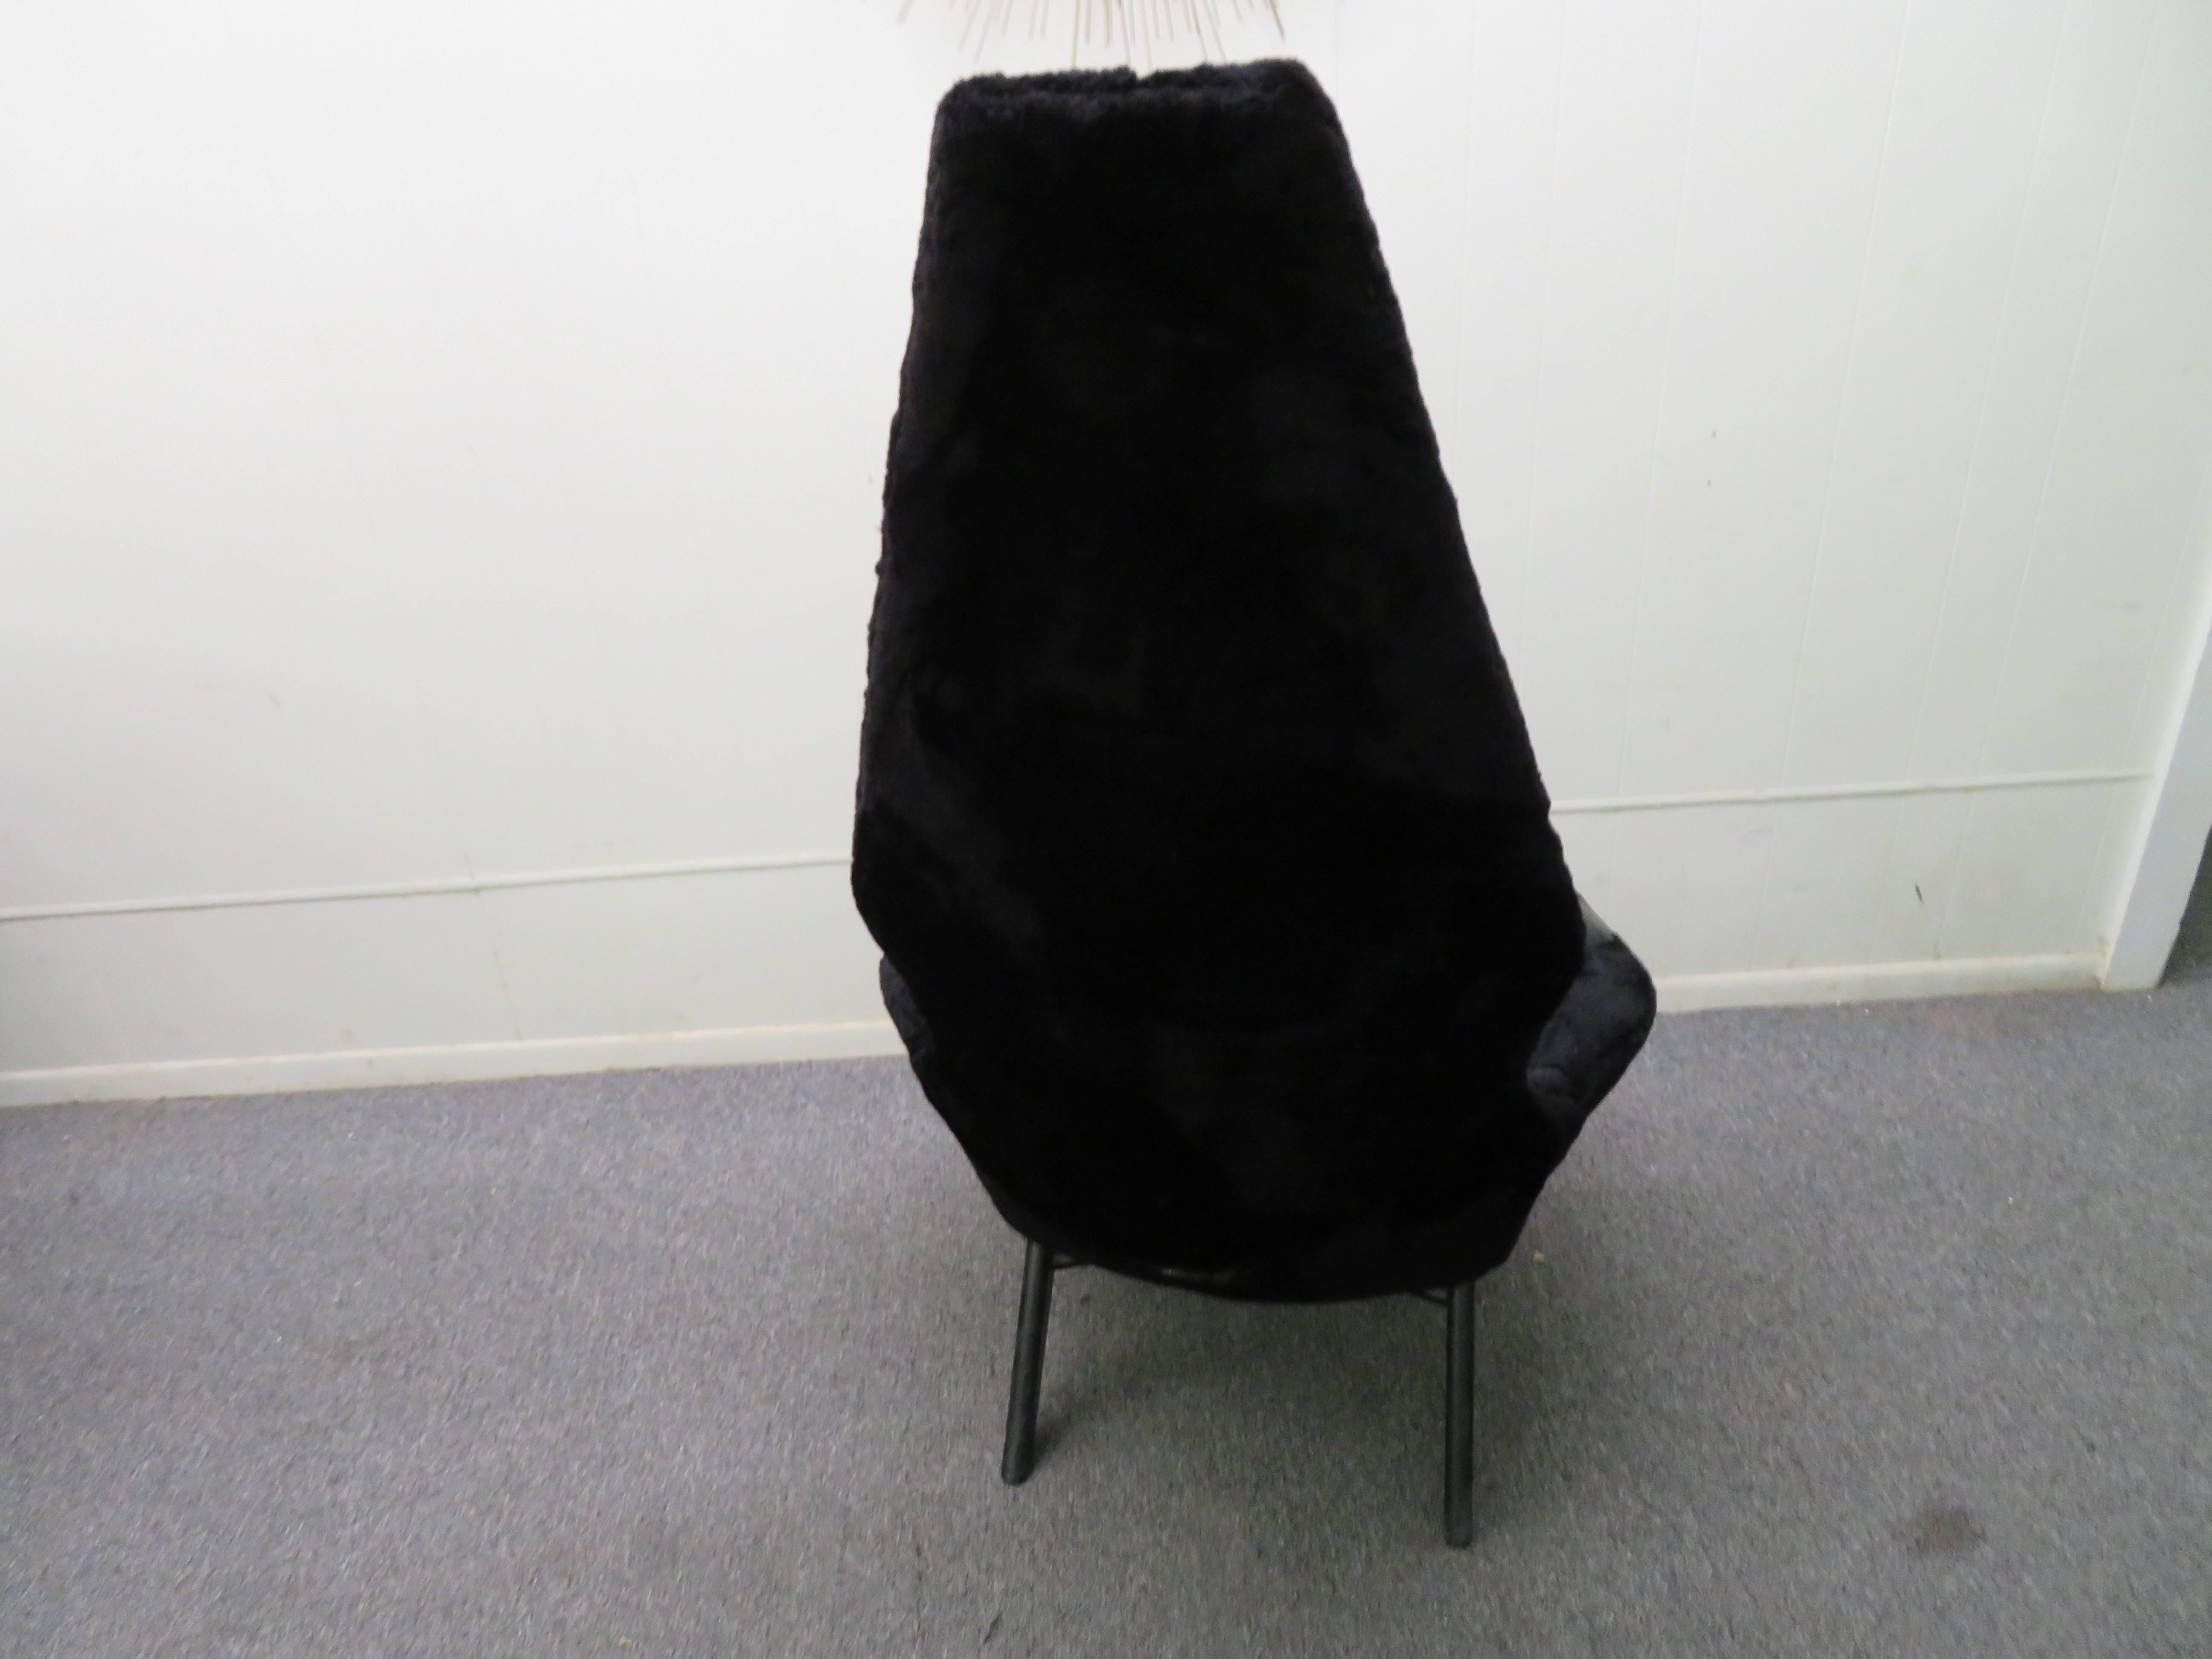 Schönes Label Adrian Pearsall hohe Rückenlehne Lounge-Stuhl. Dieser Stuhl muss neu gepolstert werden, der Stoff ist abgenutzt und der Schaumstoff im Sitz ist hart, aber die ursprüngliche schwarz lackierte Oberfläche ist in gutem Zustand. Bitte sehen